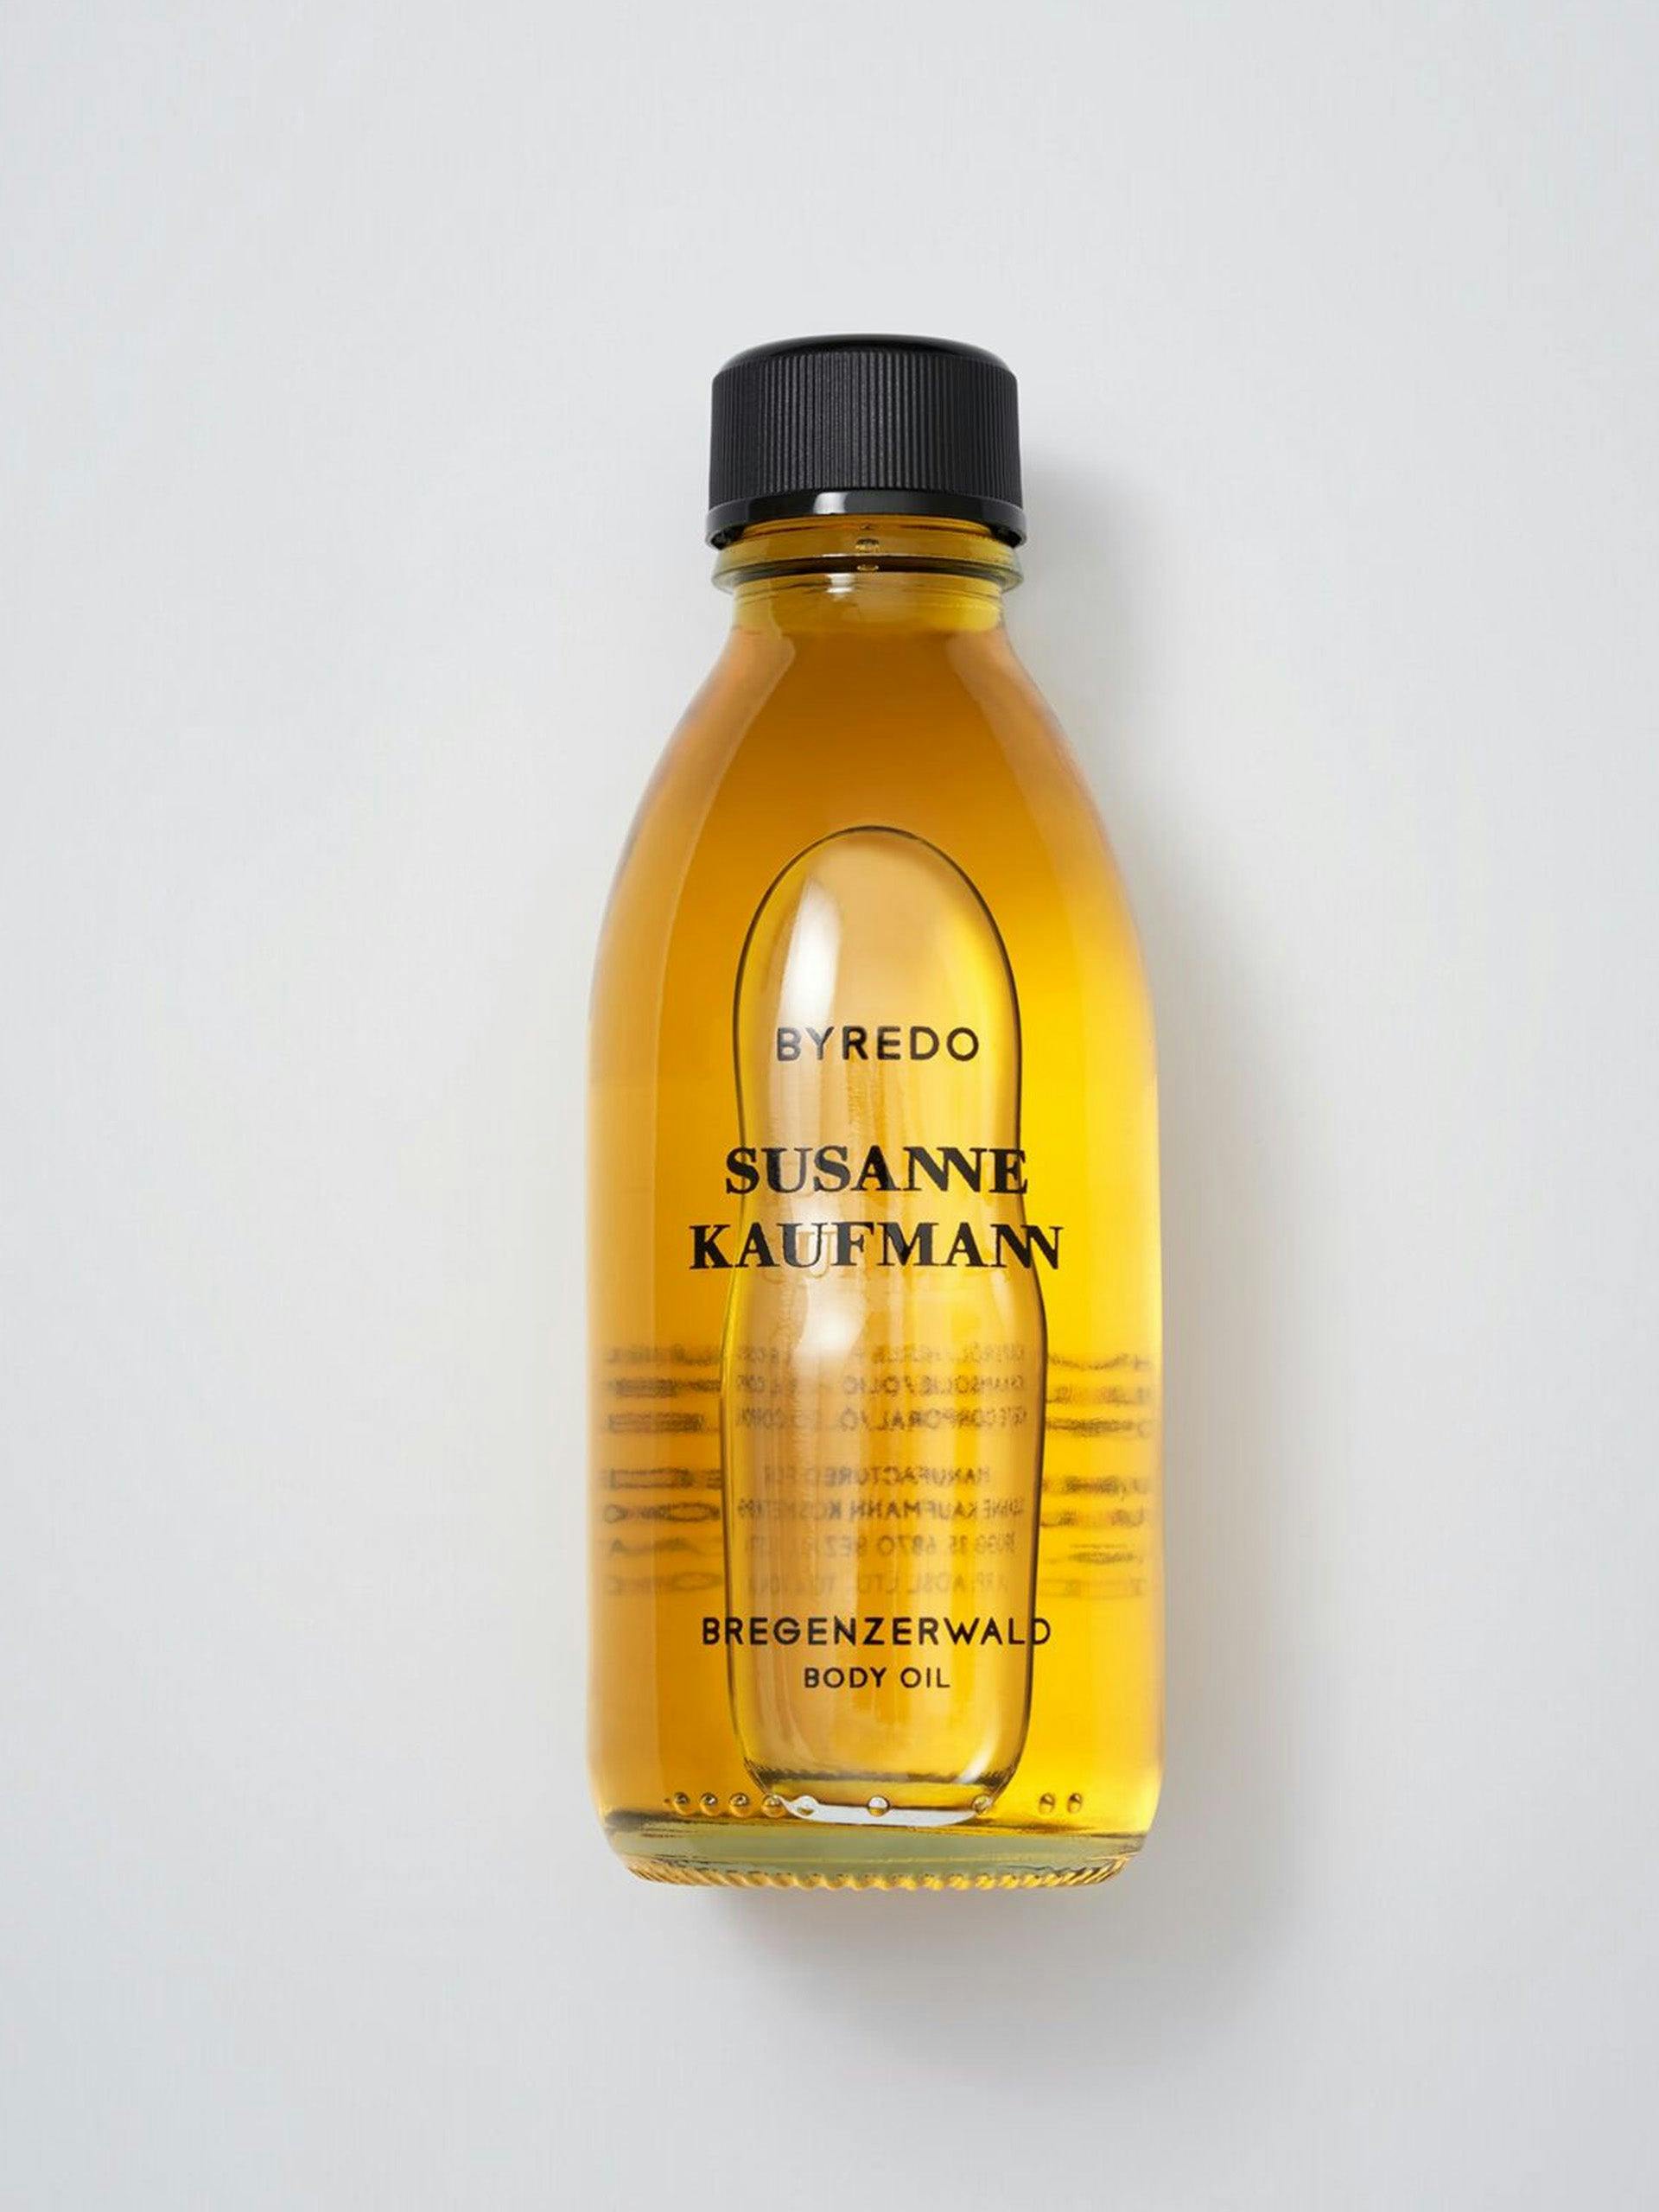 Susanne Kaufmann body oil